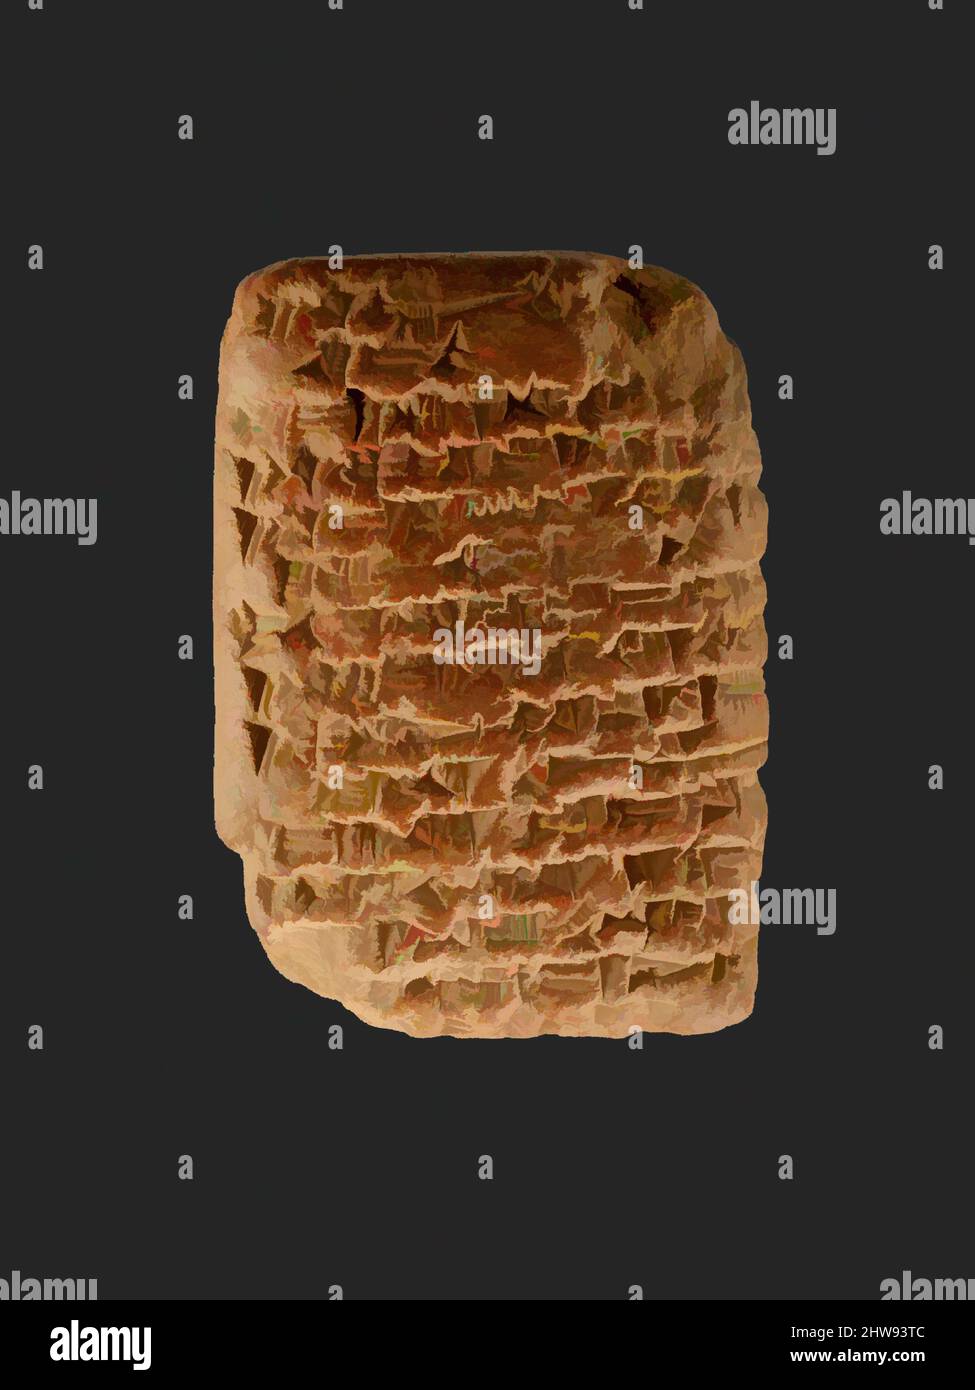 Kunst inspiriert von Amarna Brief: Königlicher Brief von Ashur-uballit, dem König von Assyrien, an den König von Ägypten, Neues Königreich, Amarna-Zeit, Dynastie 18, ca. 1353–1336 v. Chr., aus Ägypten; wahrscheinlich aus Mittelägypten, Amarna (Akhetaten), Ton, H. 7,7 cm (3 1/16 in.); W. 5,5 cm (2 3/16 in.), Dies, Klassisches Werk, das von Artotop mit einem Schuss Moderne modernisiert wurde. Formen, Farbe und Wert, auffällige visuelle Wirkung auf Kunst. Emotionen durch Freiheit von Kunstwerken auf zeitgemäße Weise. Eine zeitlose Botschaft, die eine wild kreative neue Richtung verfolgt. Künstler, die sich dem digitalen Medium zuwenden und die Artotop NFT erschaffen Stockfoto